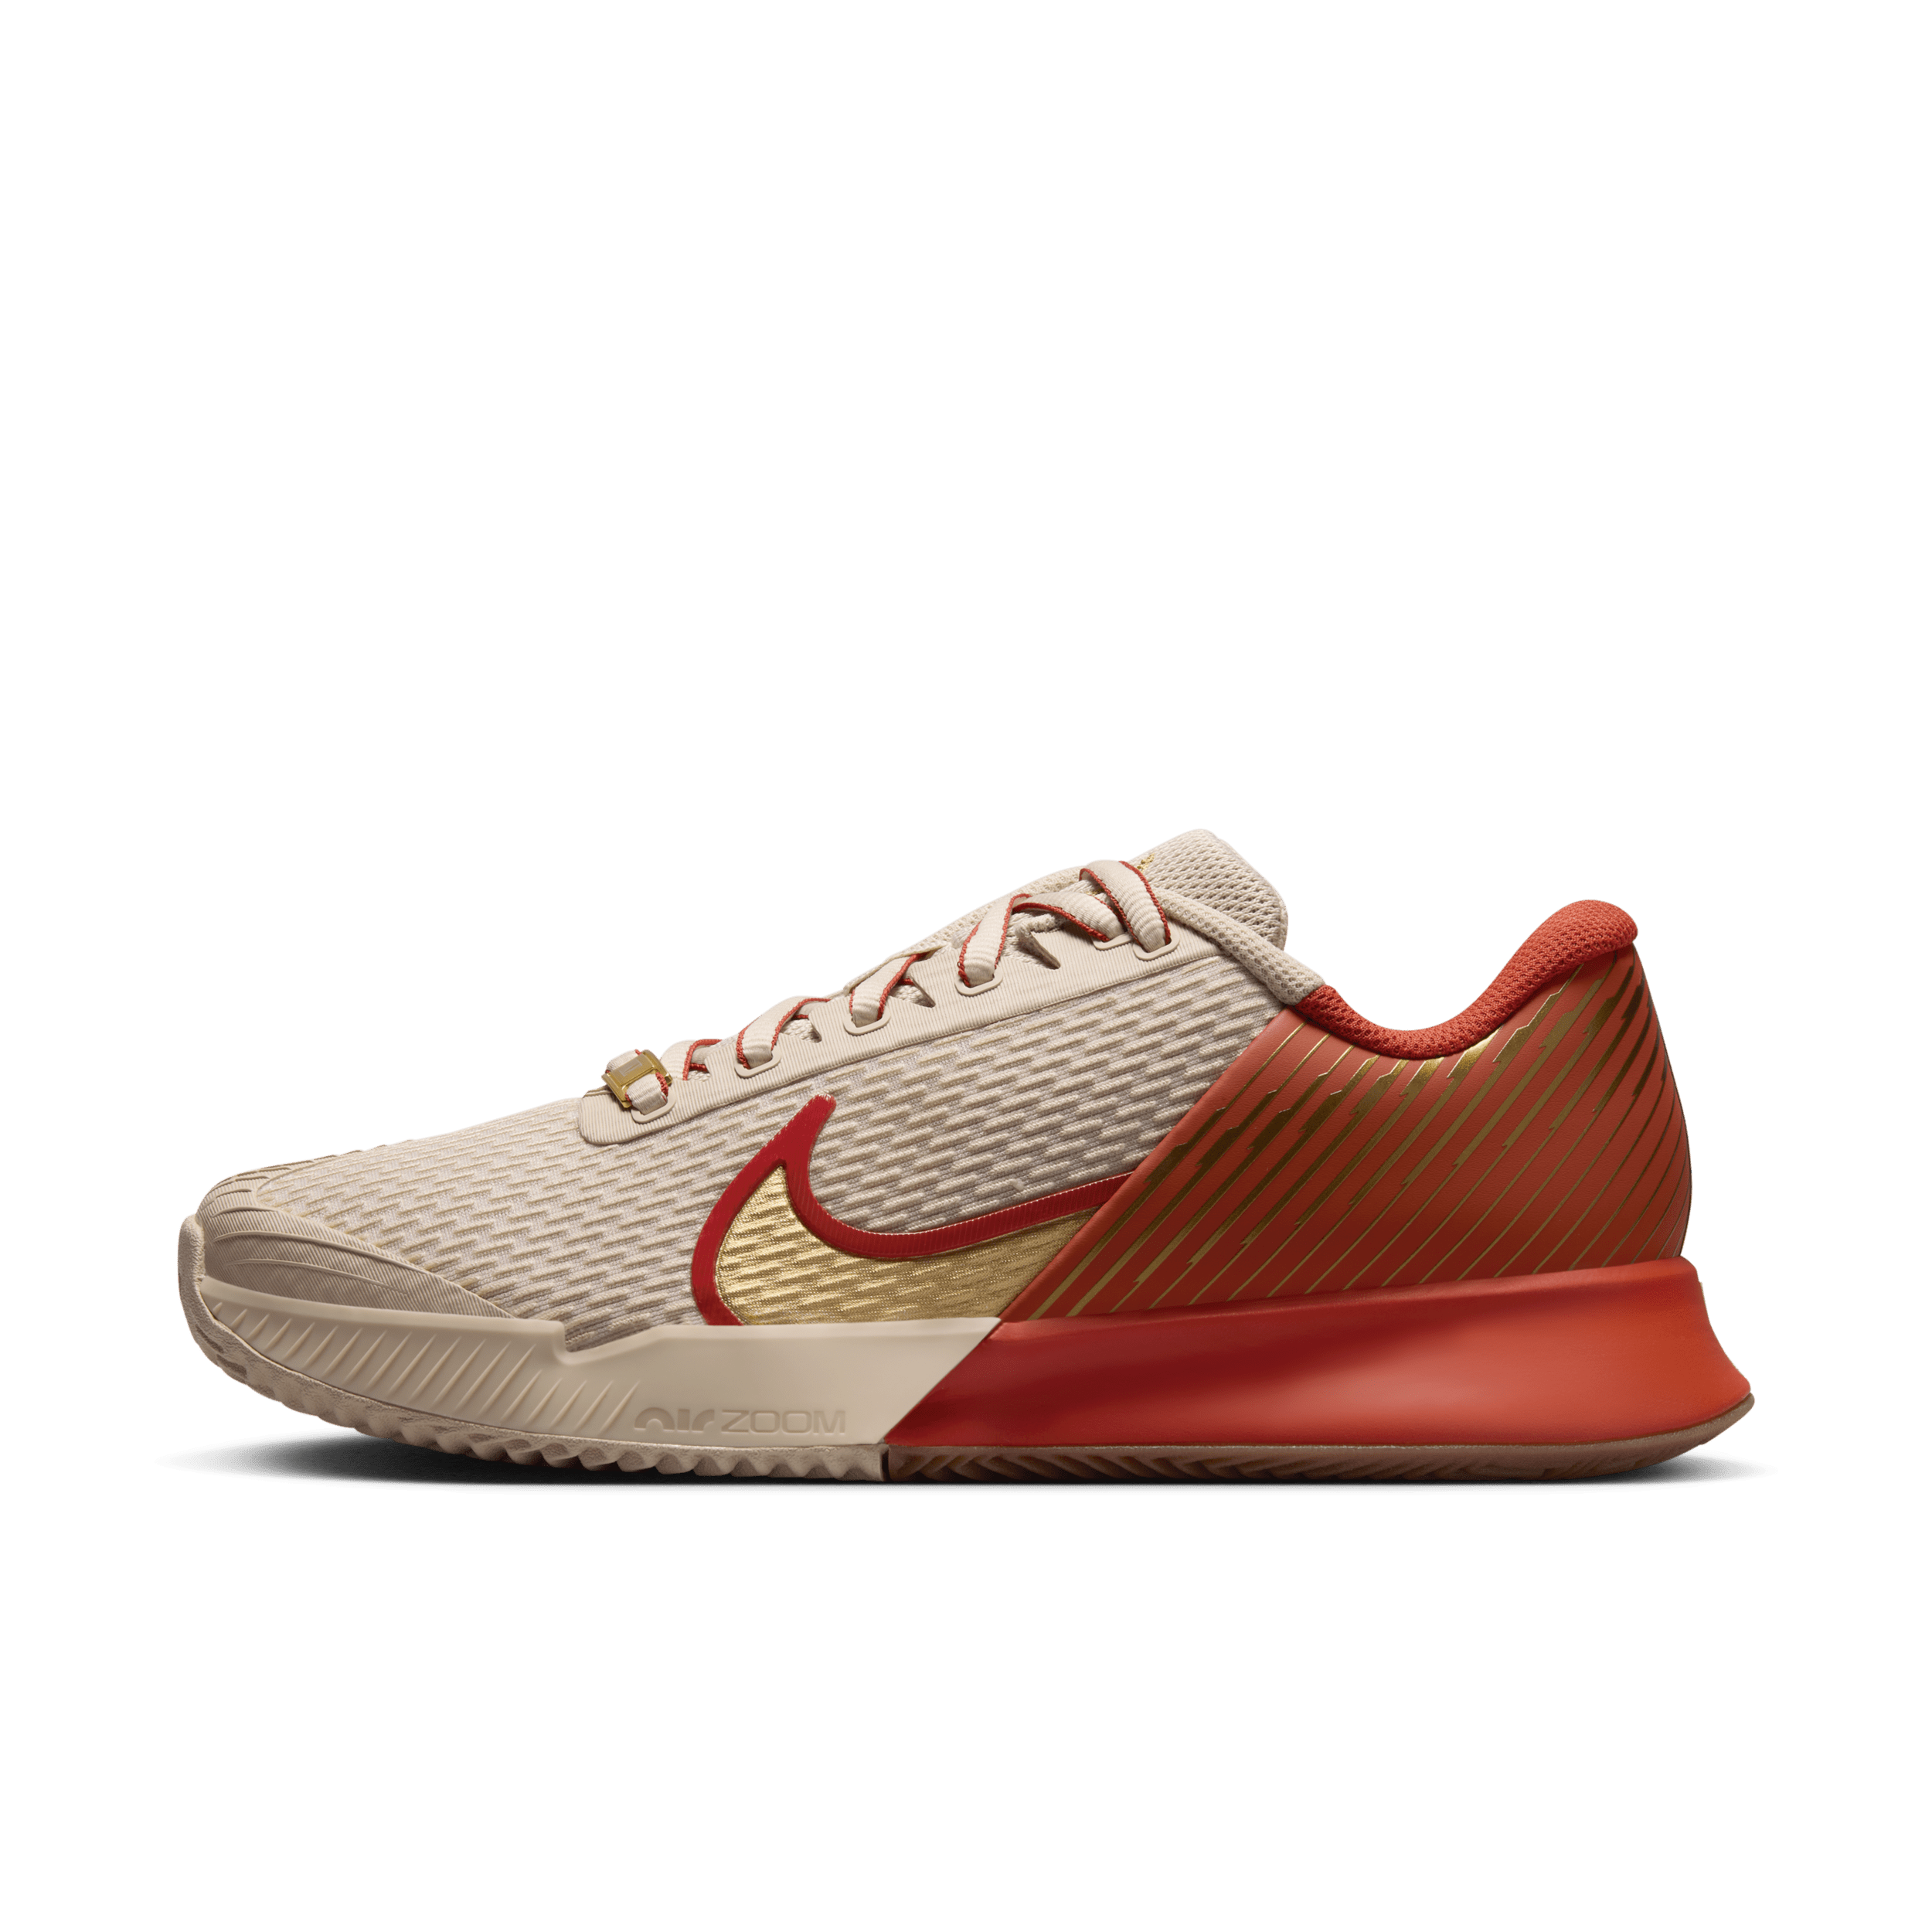 Nike Air Zoom Vapor Pro 2 Premium tennisschoenen voor dames (gravel) - Bruin